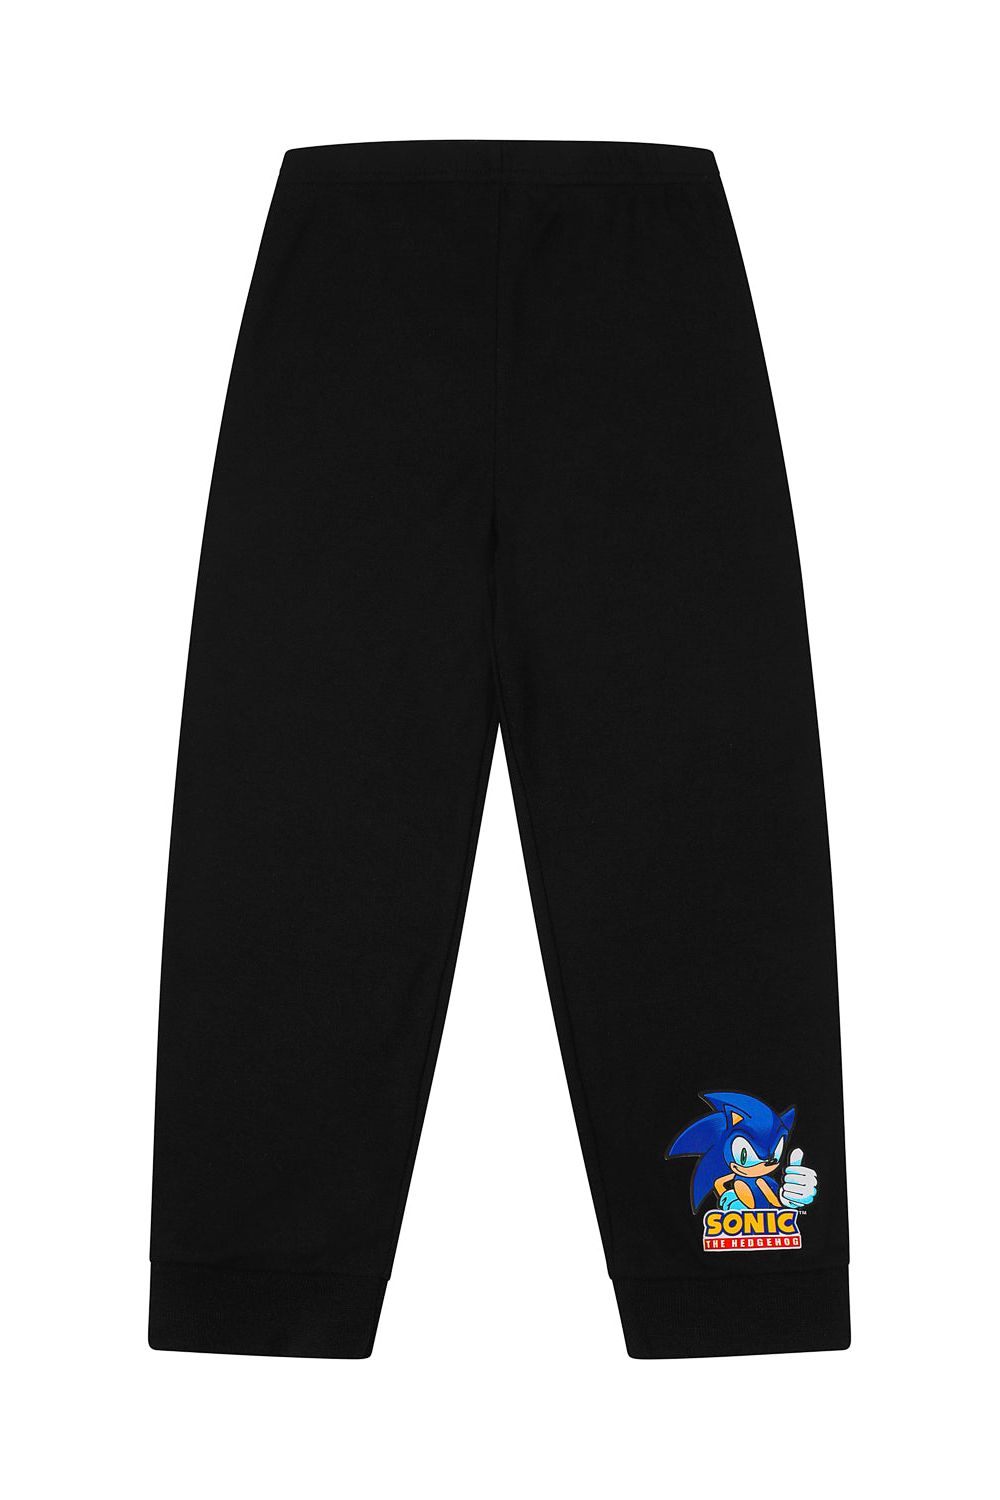 Sonic The Hedgehog Long Let's Go  Pyjamas - Pyjamas.com